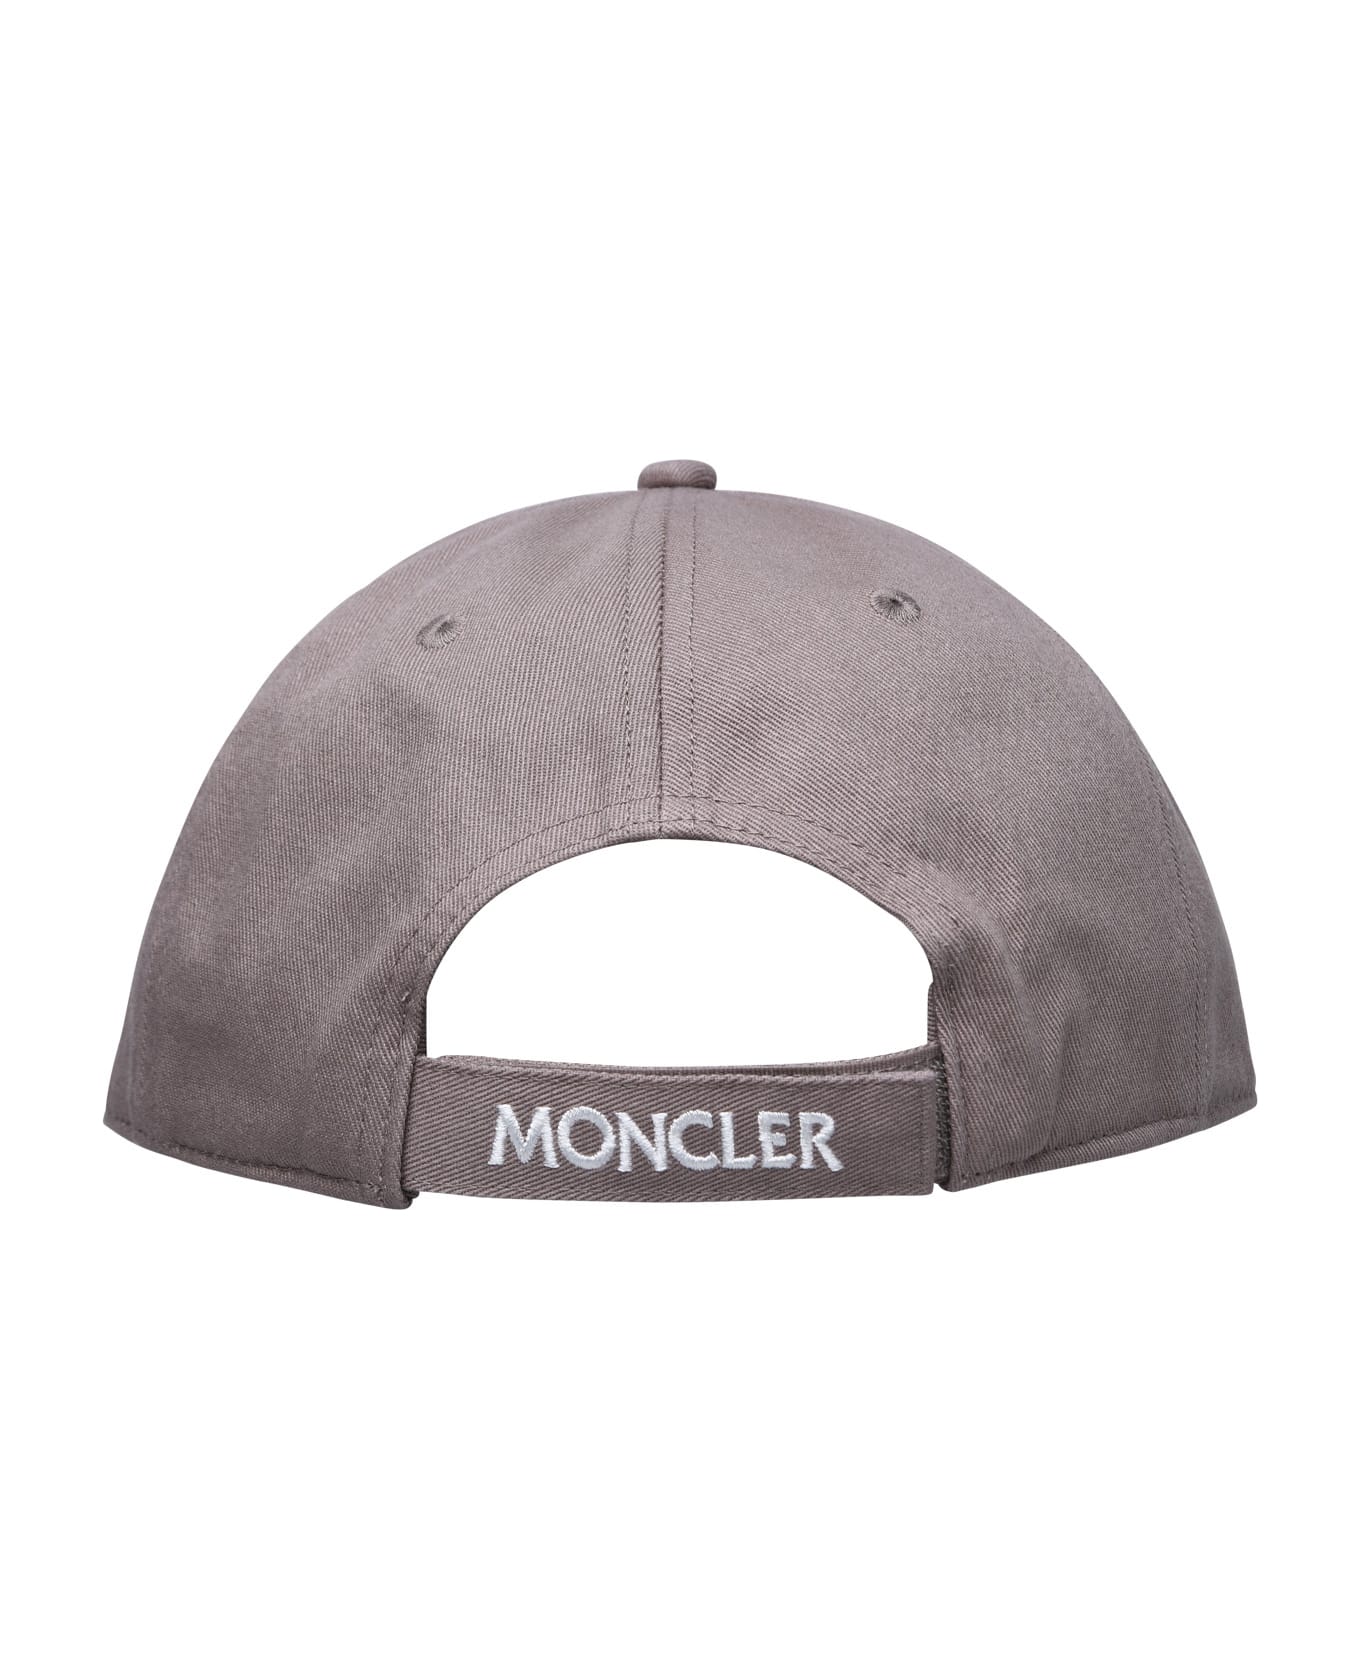 Moncler Beige Cotton Hat - 906 帽子